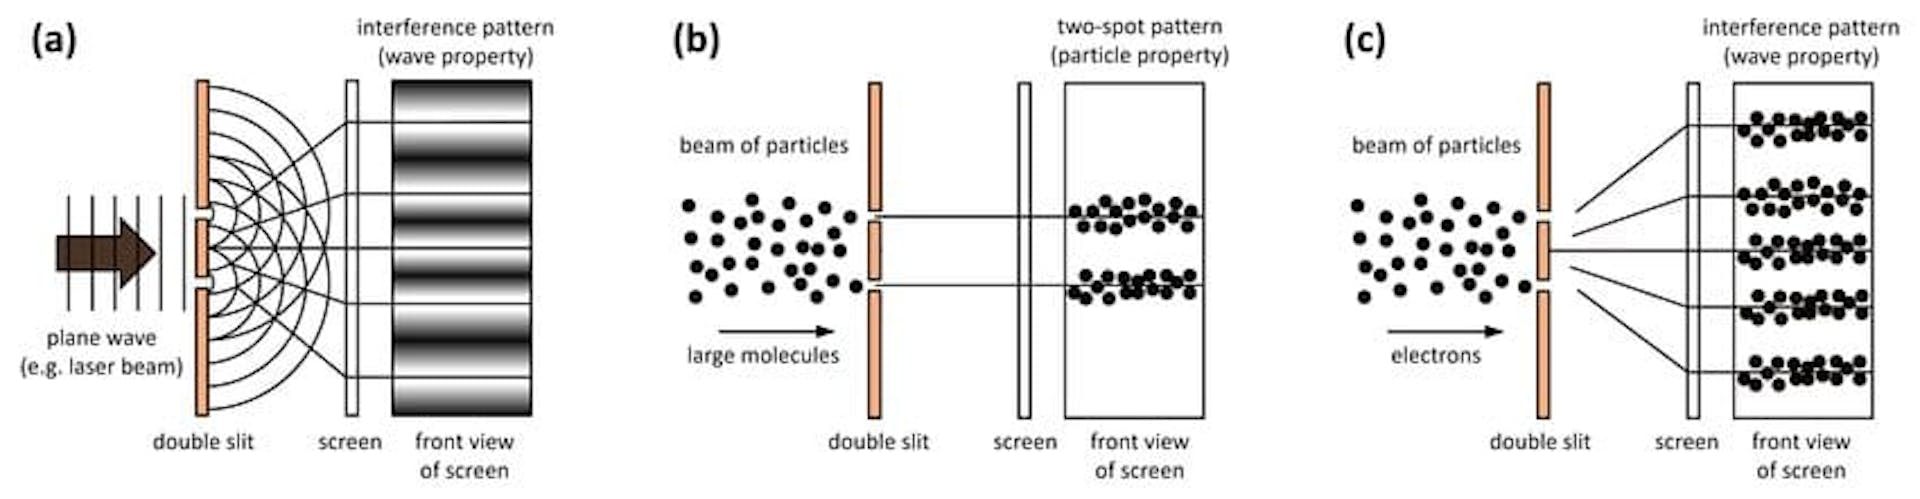 出典: https://www.researchgate.net/figure/Double-slit-experiment-with-a-photons-b-very-large-particles-c-electrons_fig1_349125115